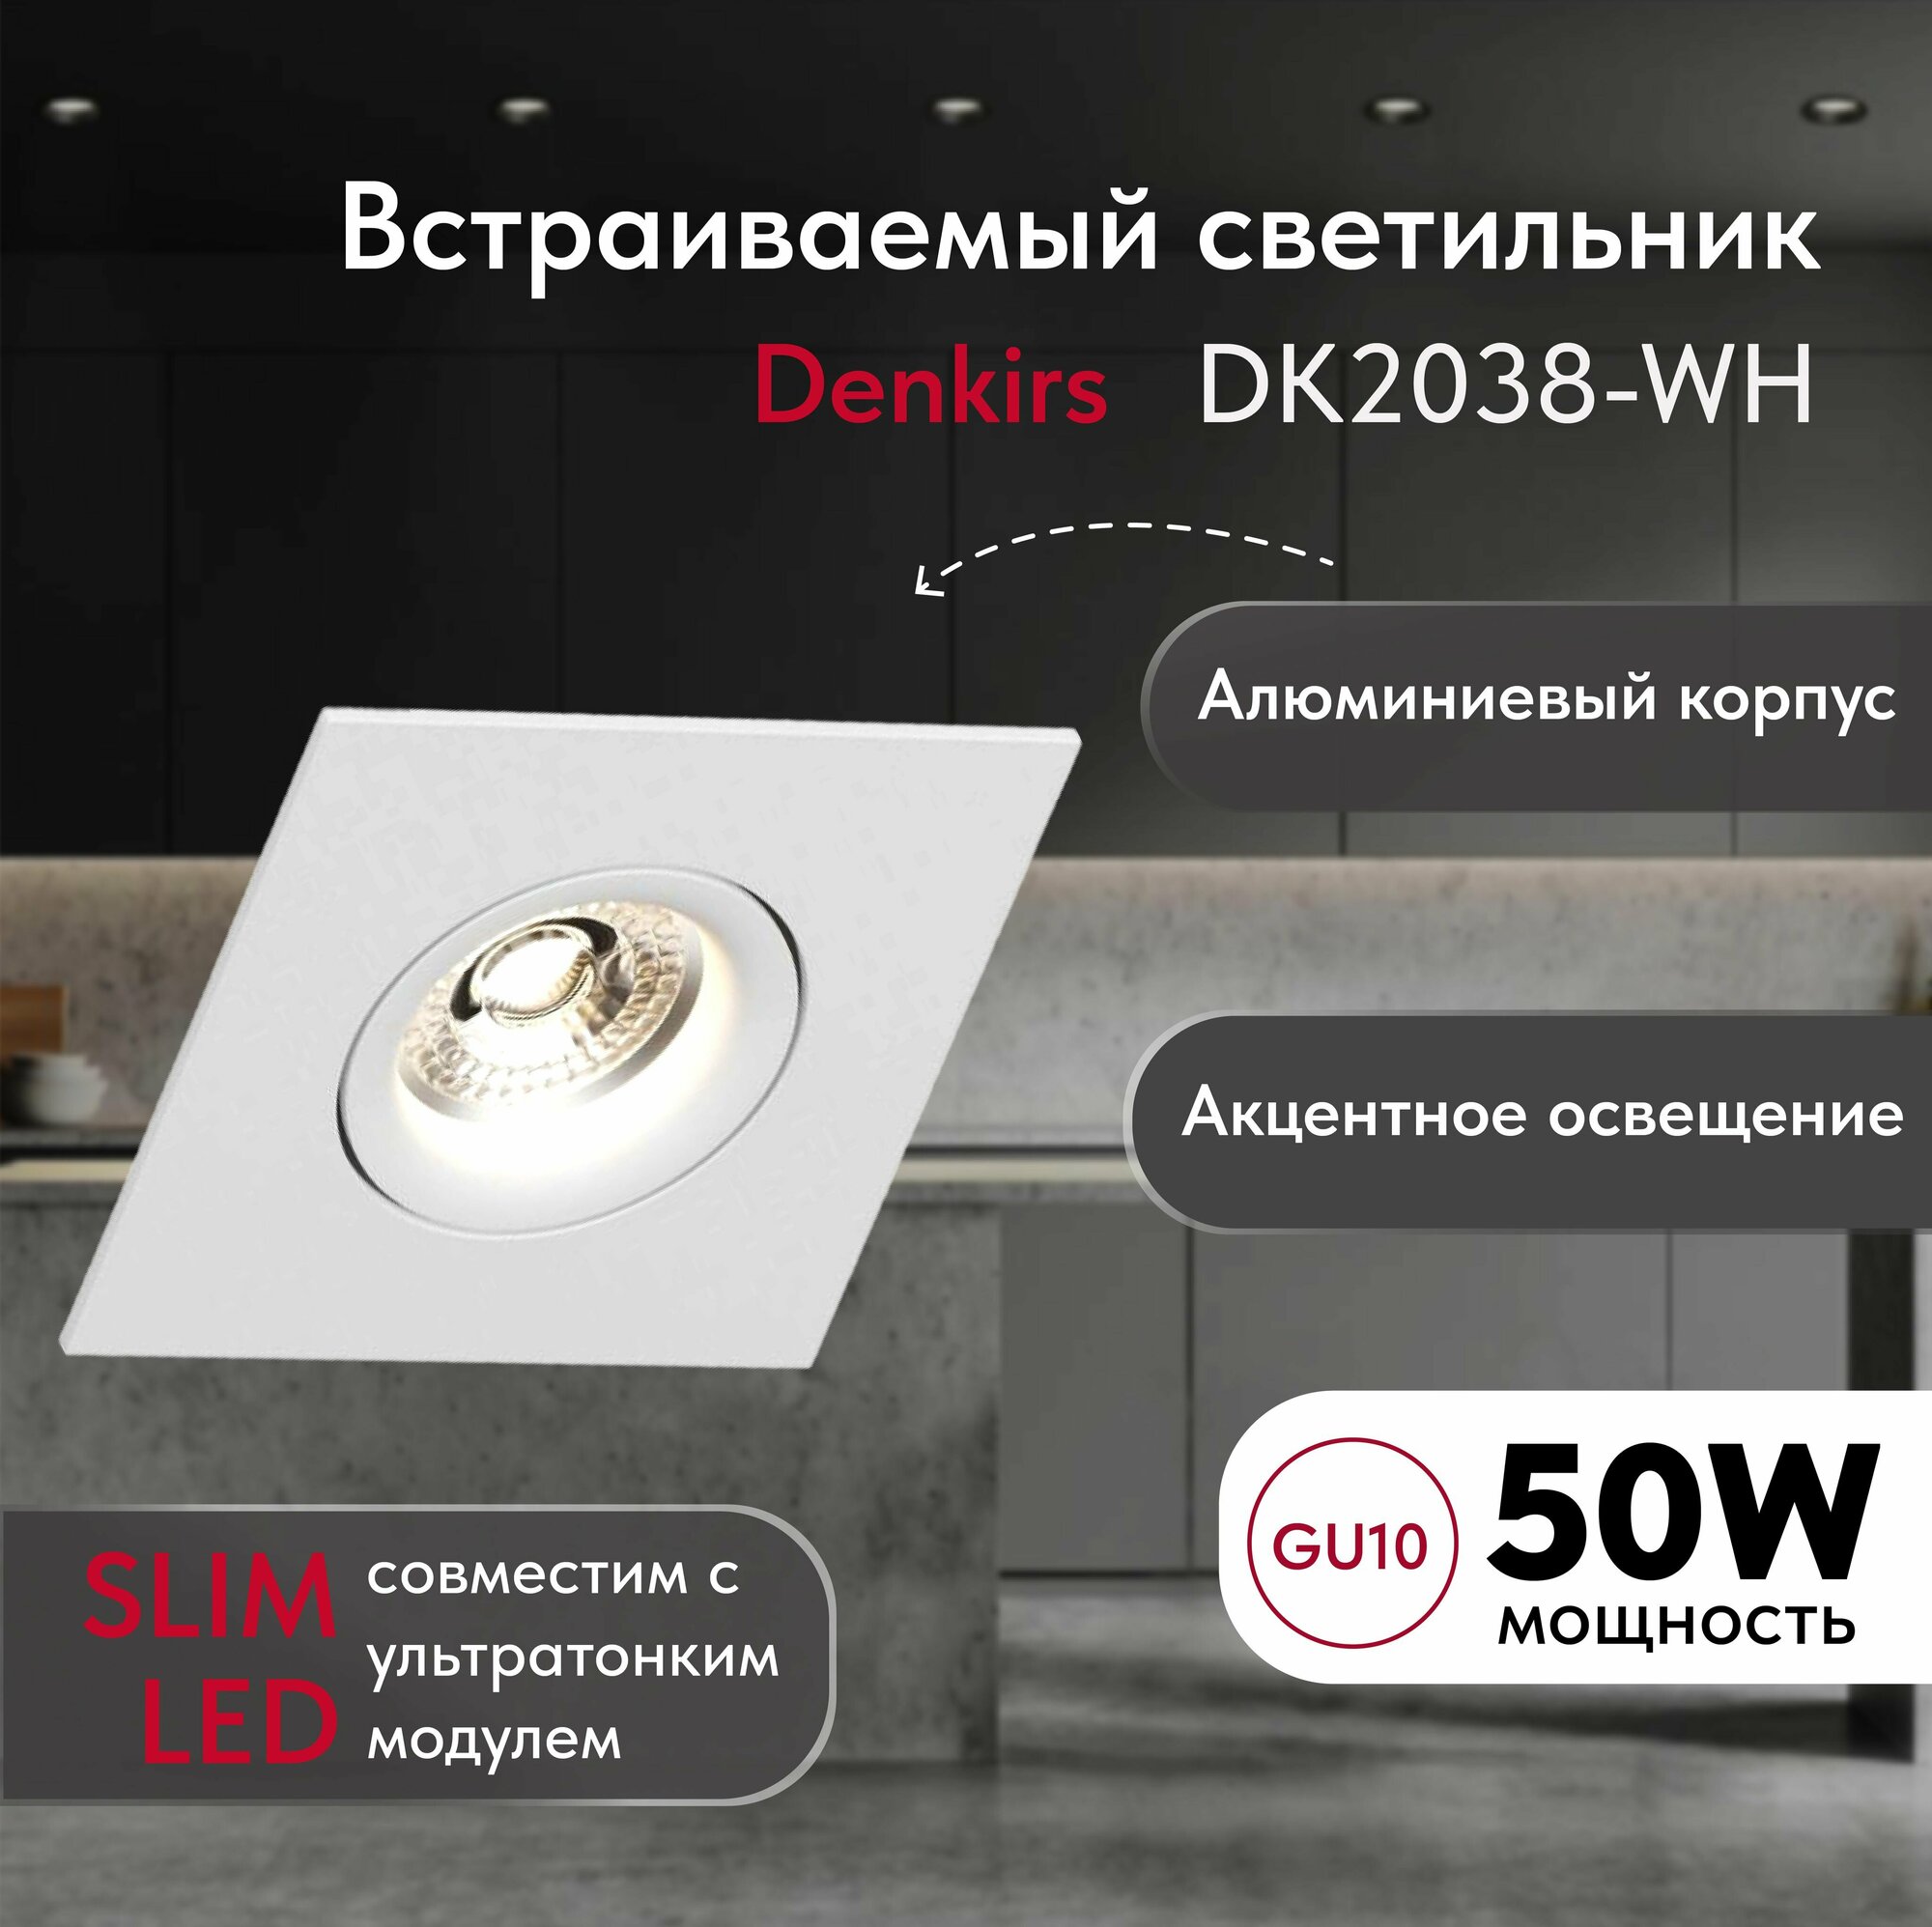 Светильник потолочный встраиваемый DENKIRS DK2038-WH, IP 20, 50 Вт, GU10, белый, алюминий